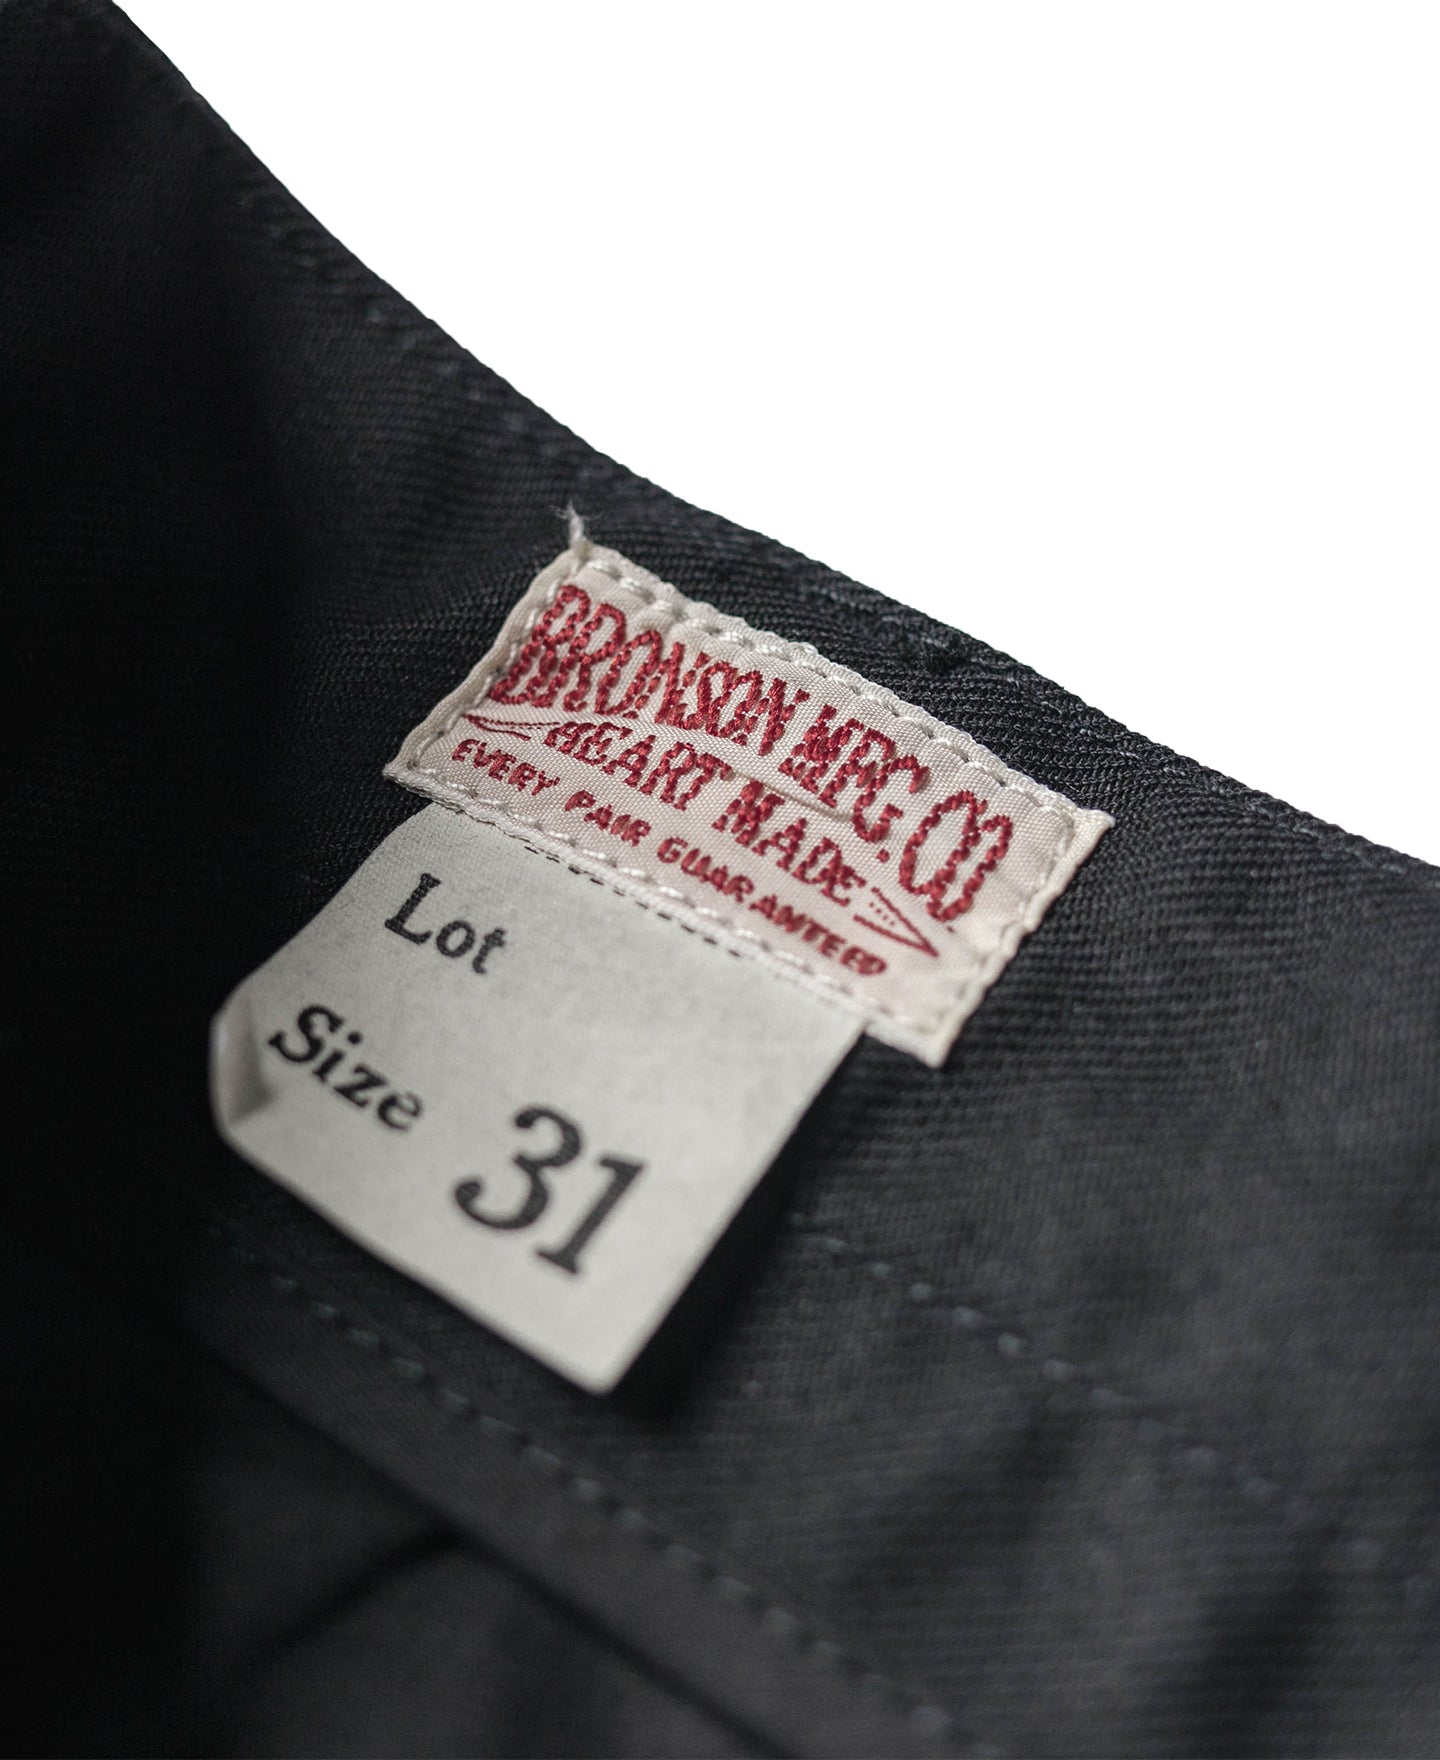 Lot 962 1960s 15 oz Cotton Black Double Pleated Pants | Bronson